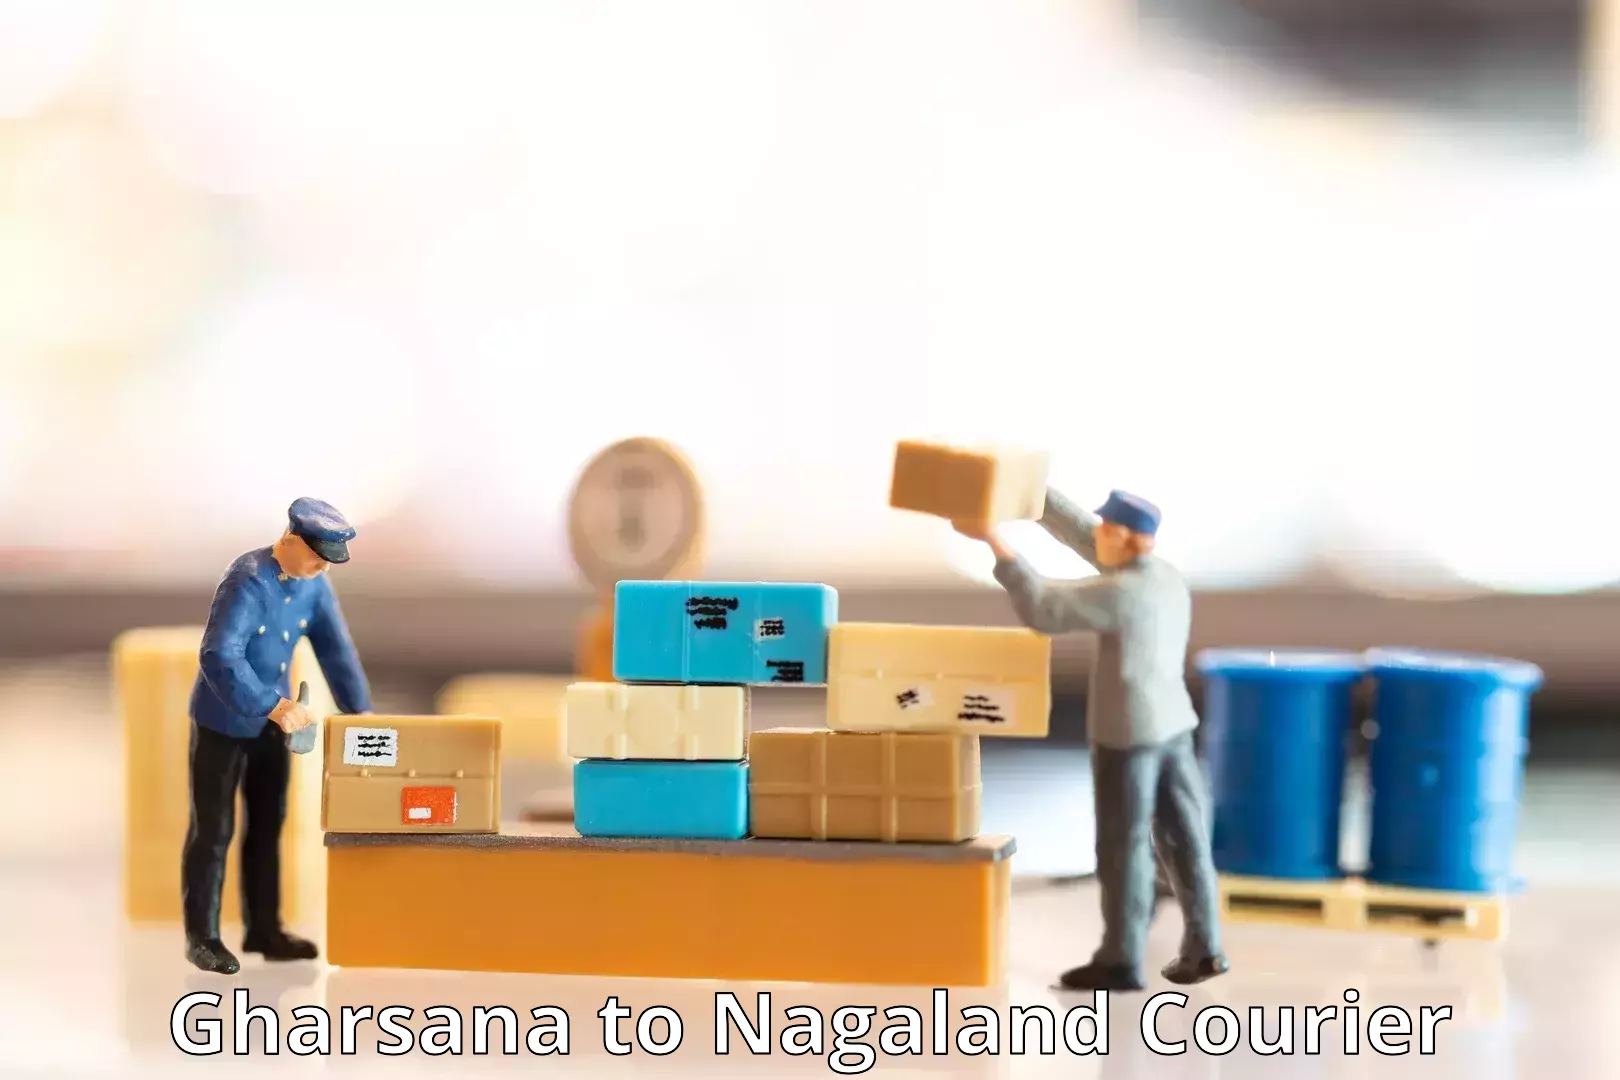 Advanced tracking systems Gharsana to Nagaland